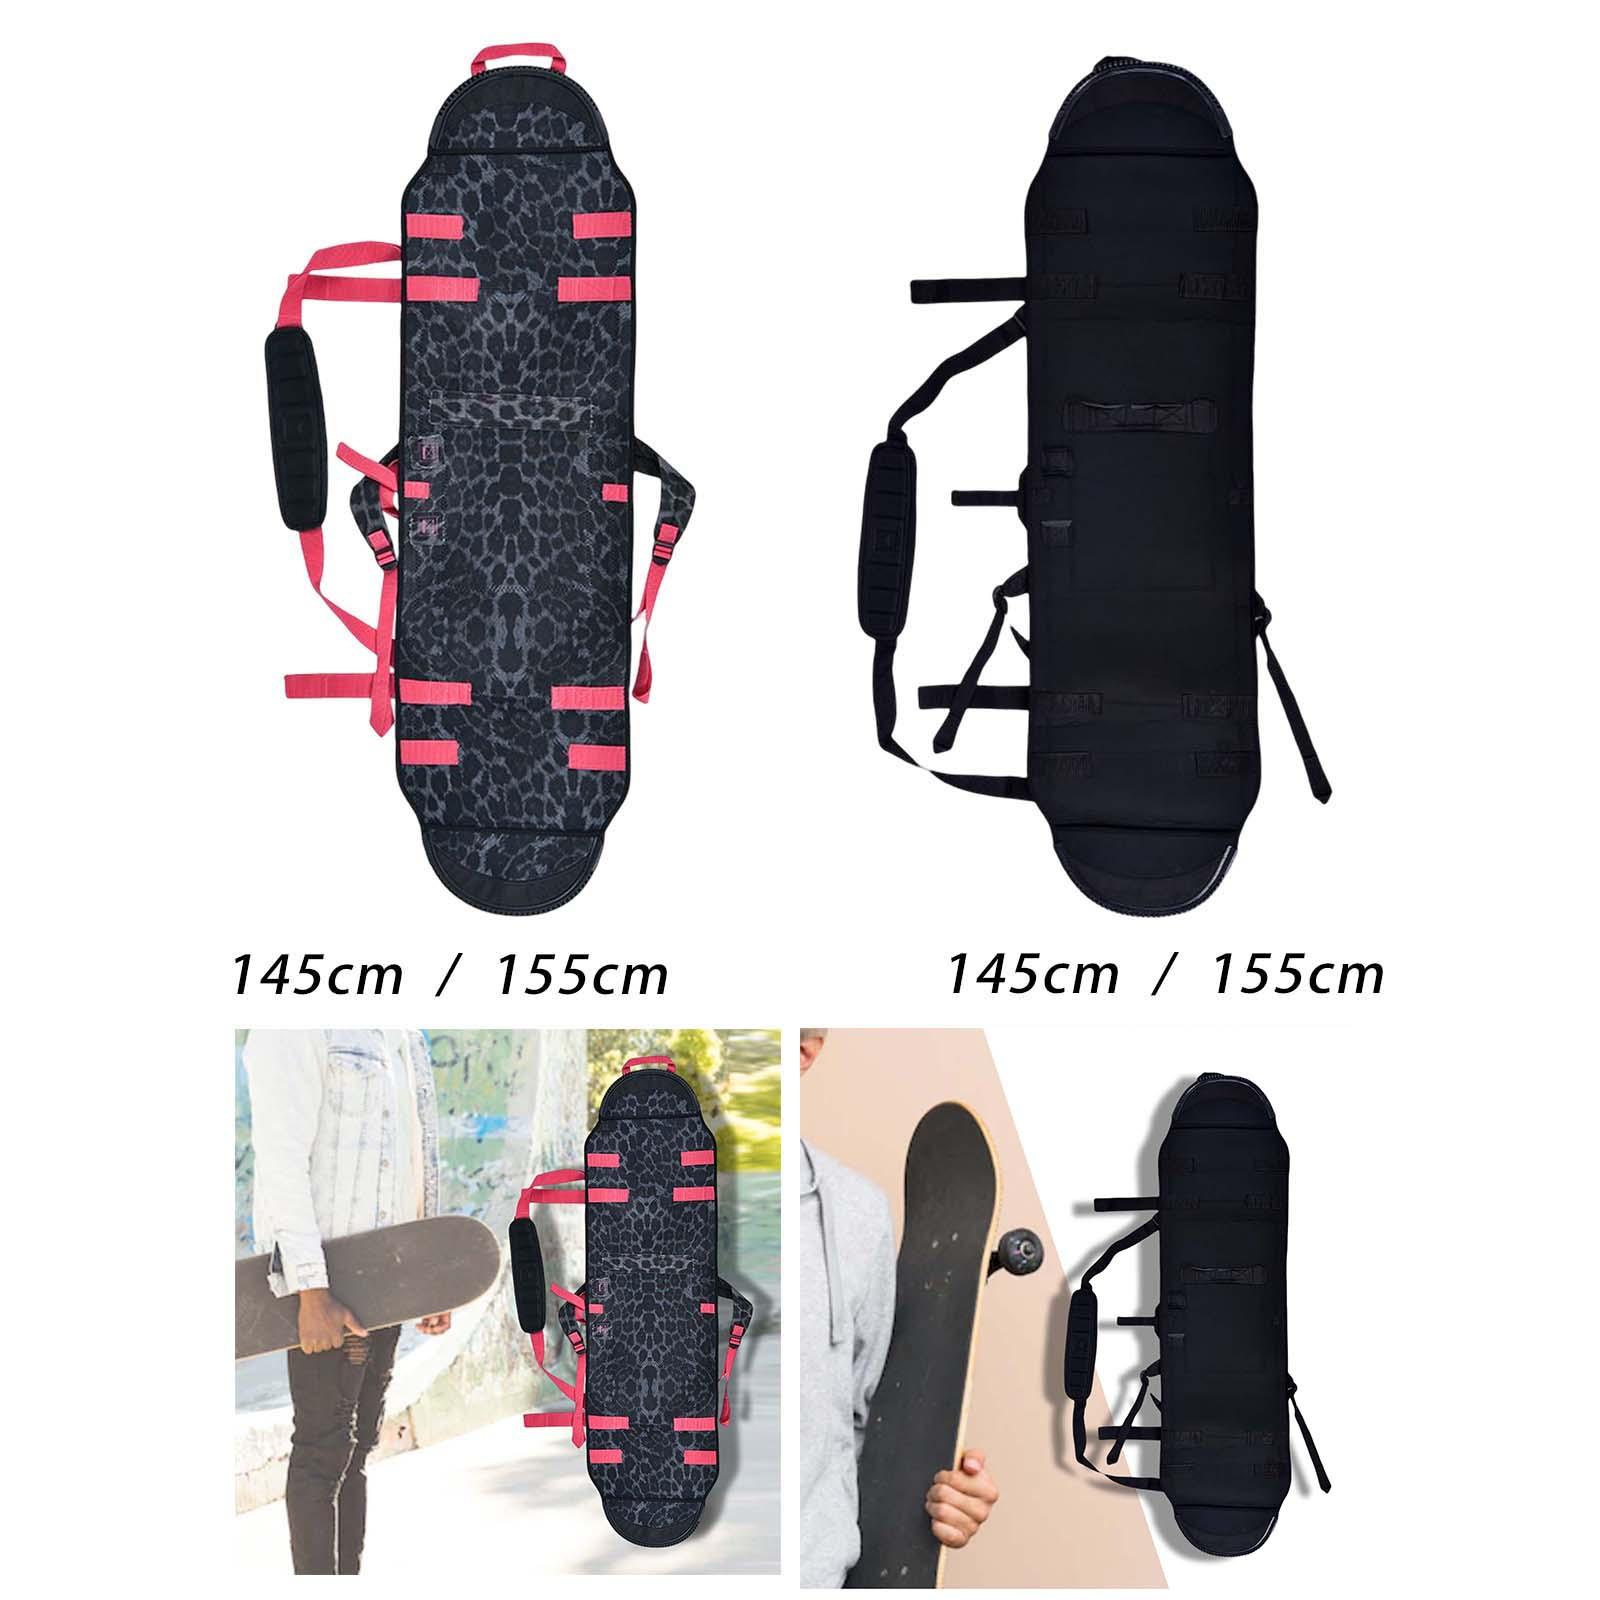 Neoprene Snowboard Sleeve Cover Case Shoulder Bag Adjustable Shoulder Strap Carry Ski Storage Bag for Outdoor Sports Traveling